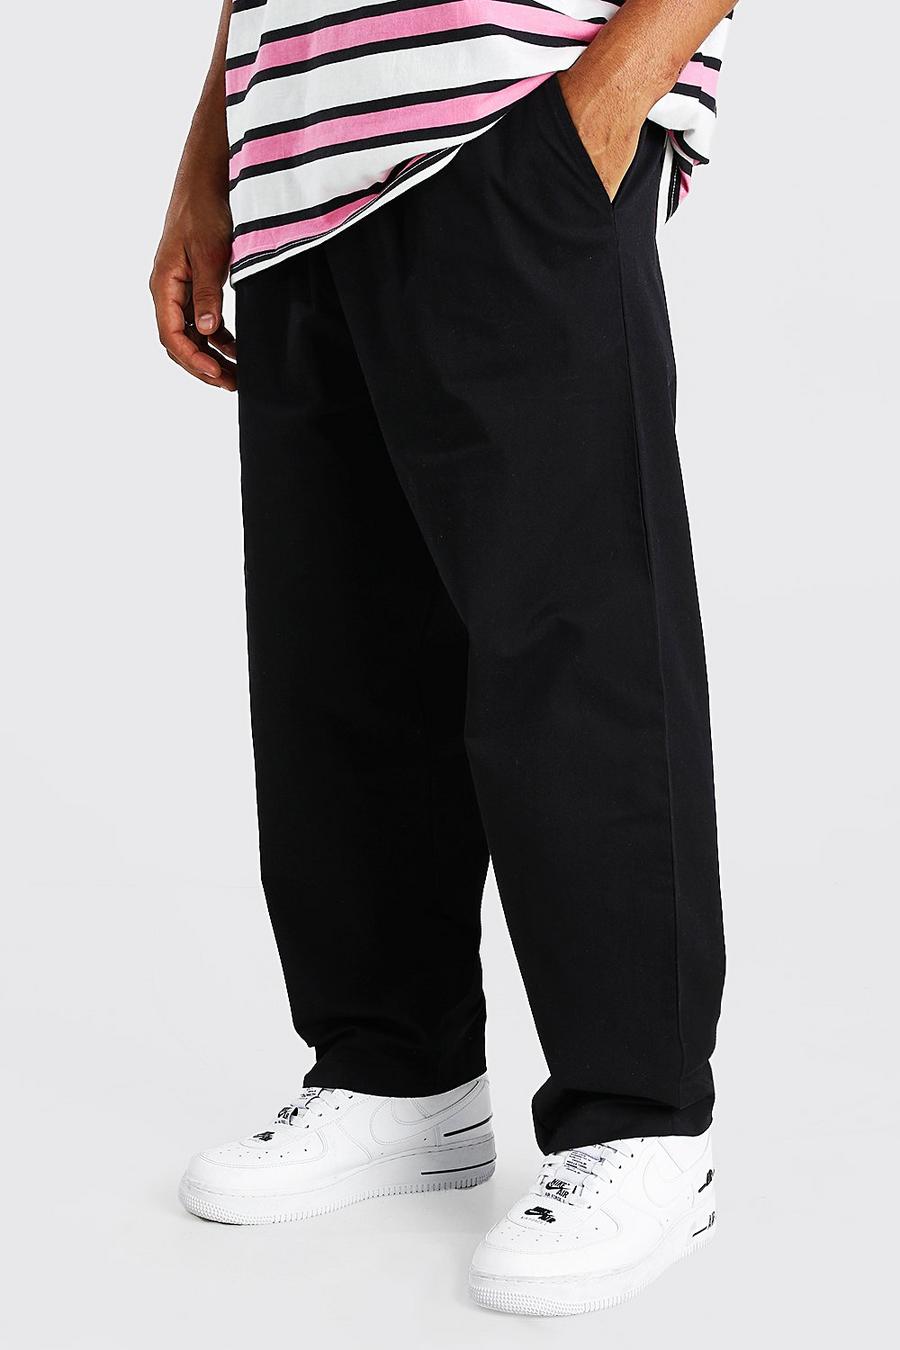 Kurze Skater-Fit Chino-Hose mit elastischem Bund, Schwarz noir